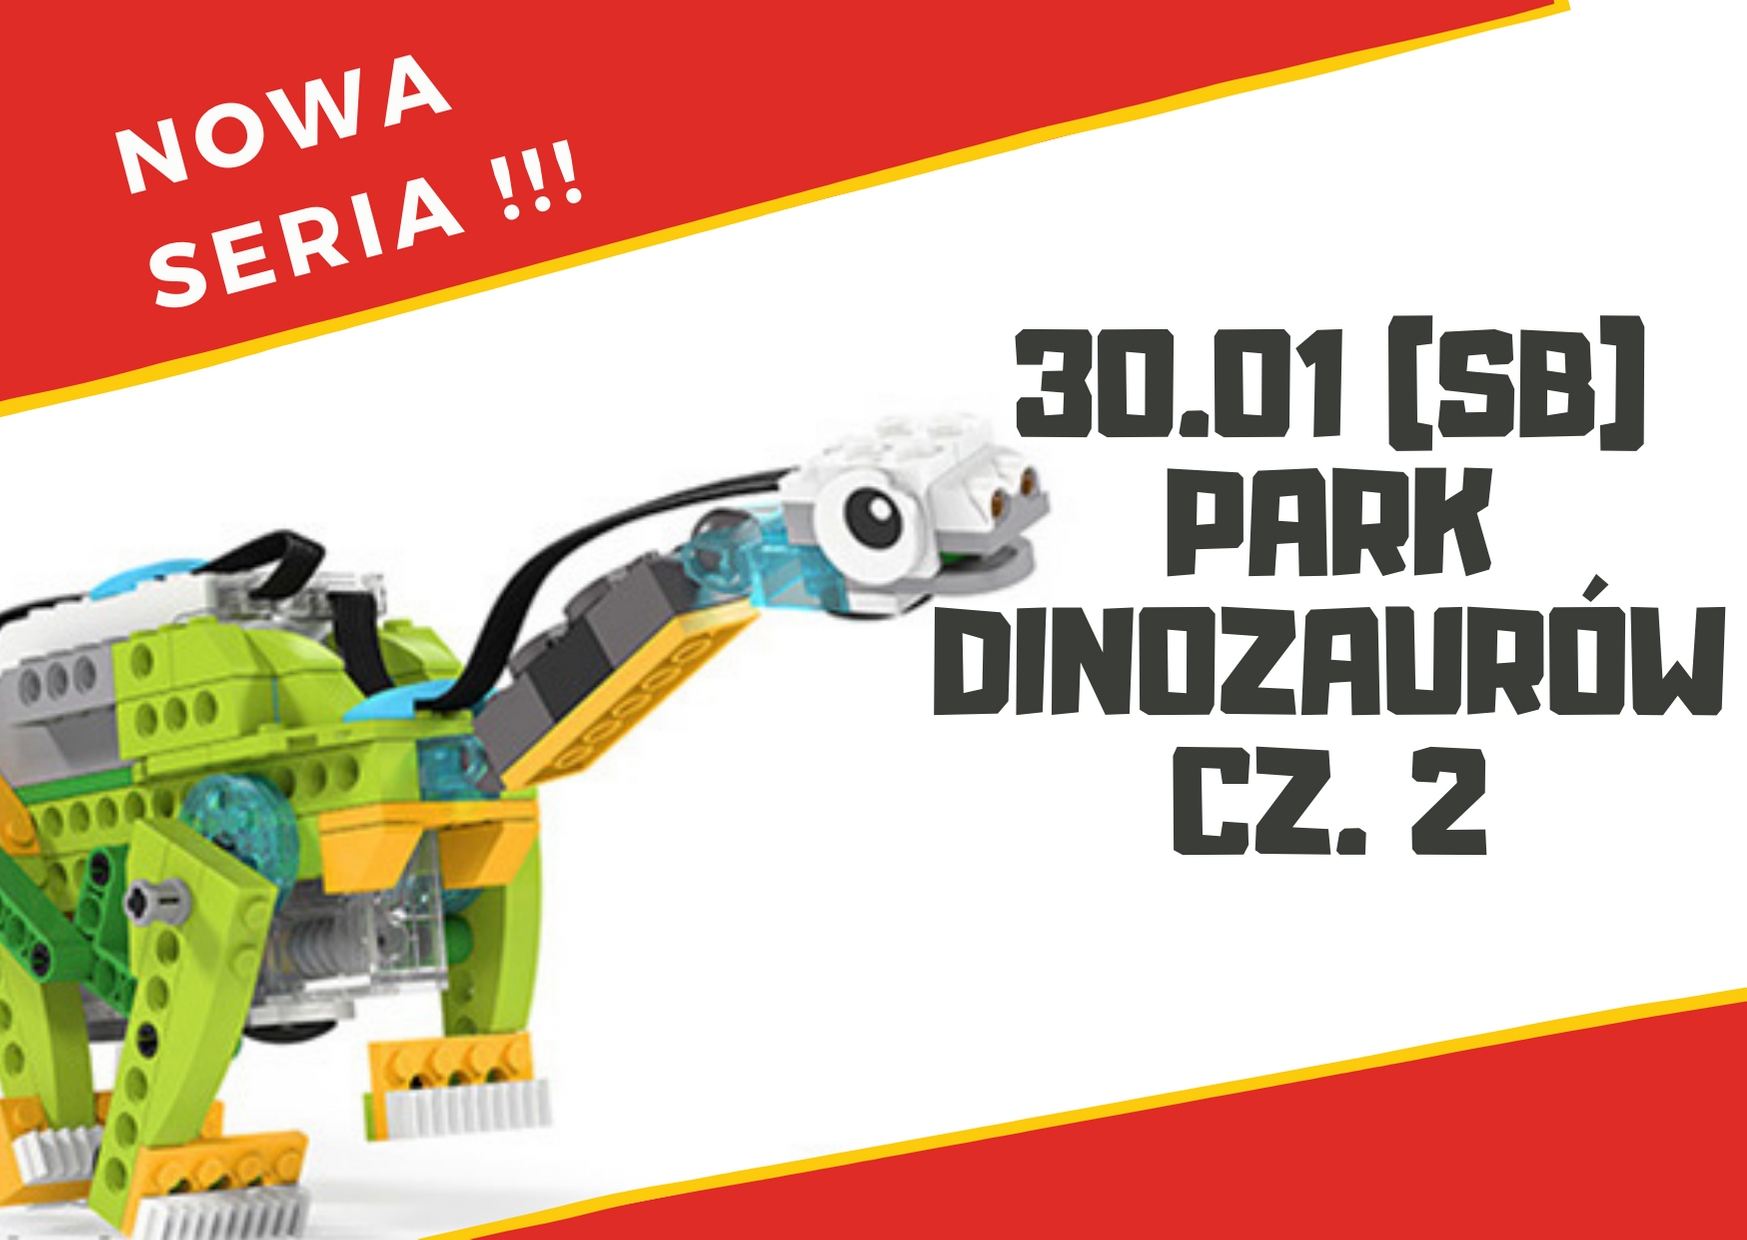 Park Dinozaurów cz. 2 NOWA SERIA - warsztaty robotyki dla dzieci